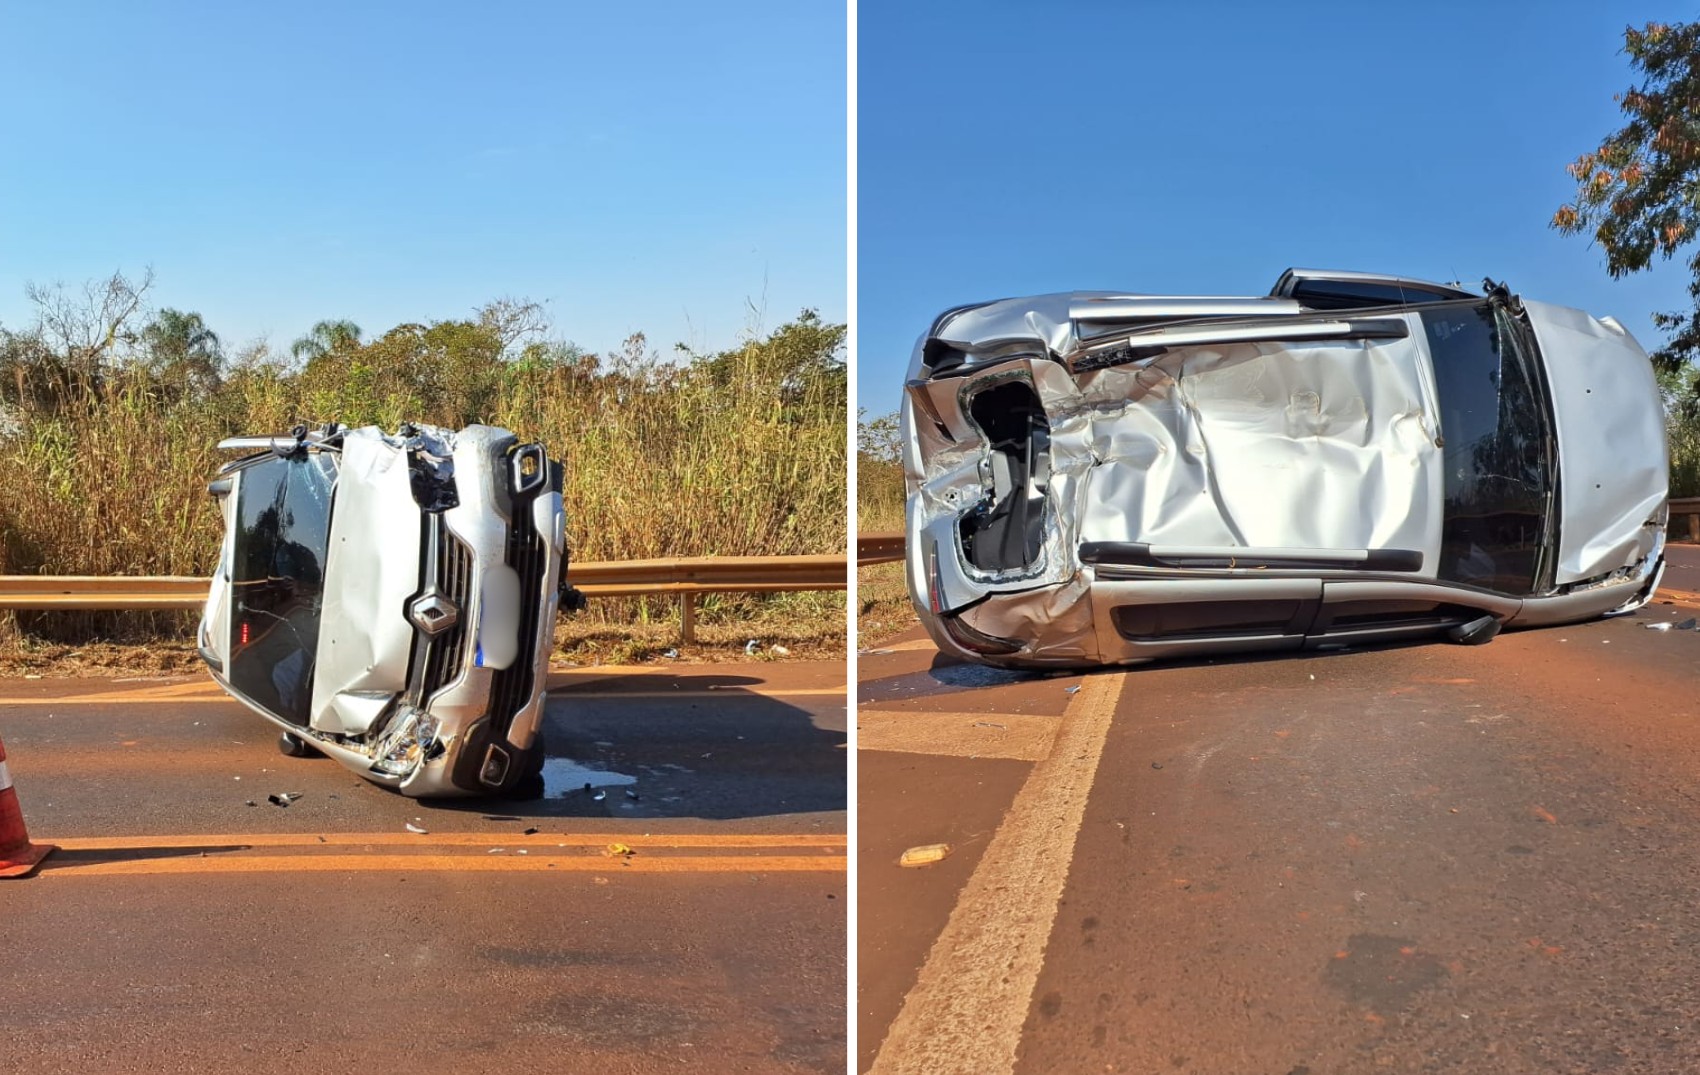 Colisão entre carros e caminhonete deixa delegado ferido em rodovia de Barrinha, SP